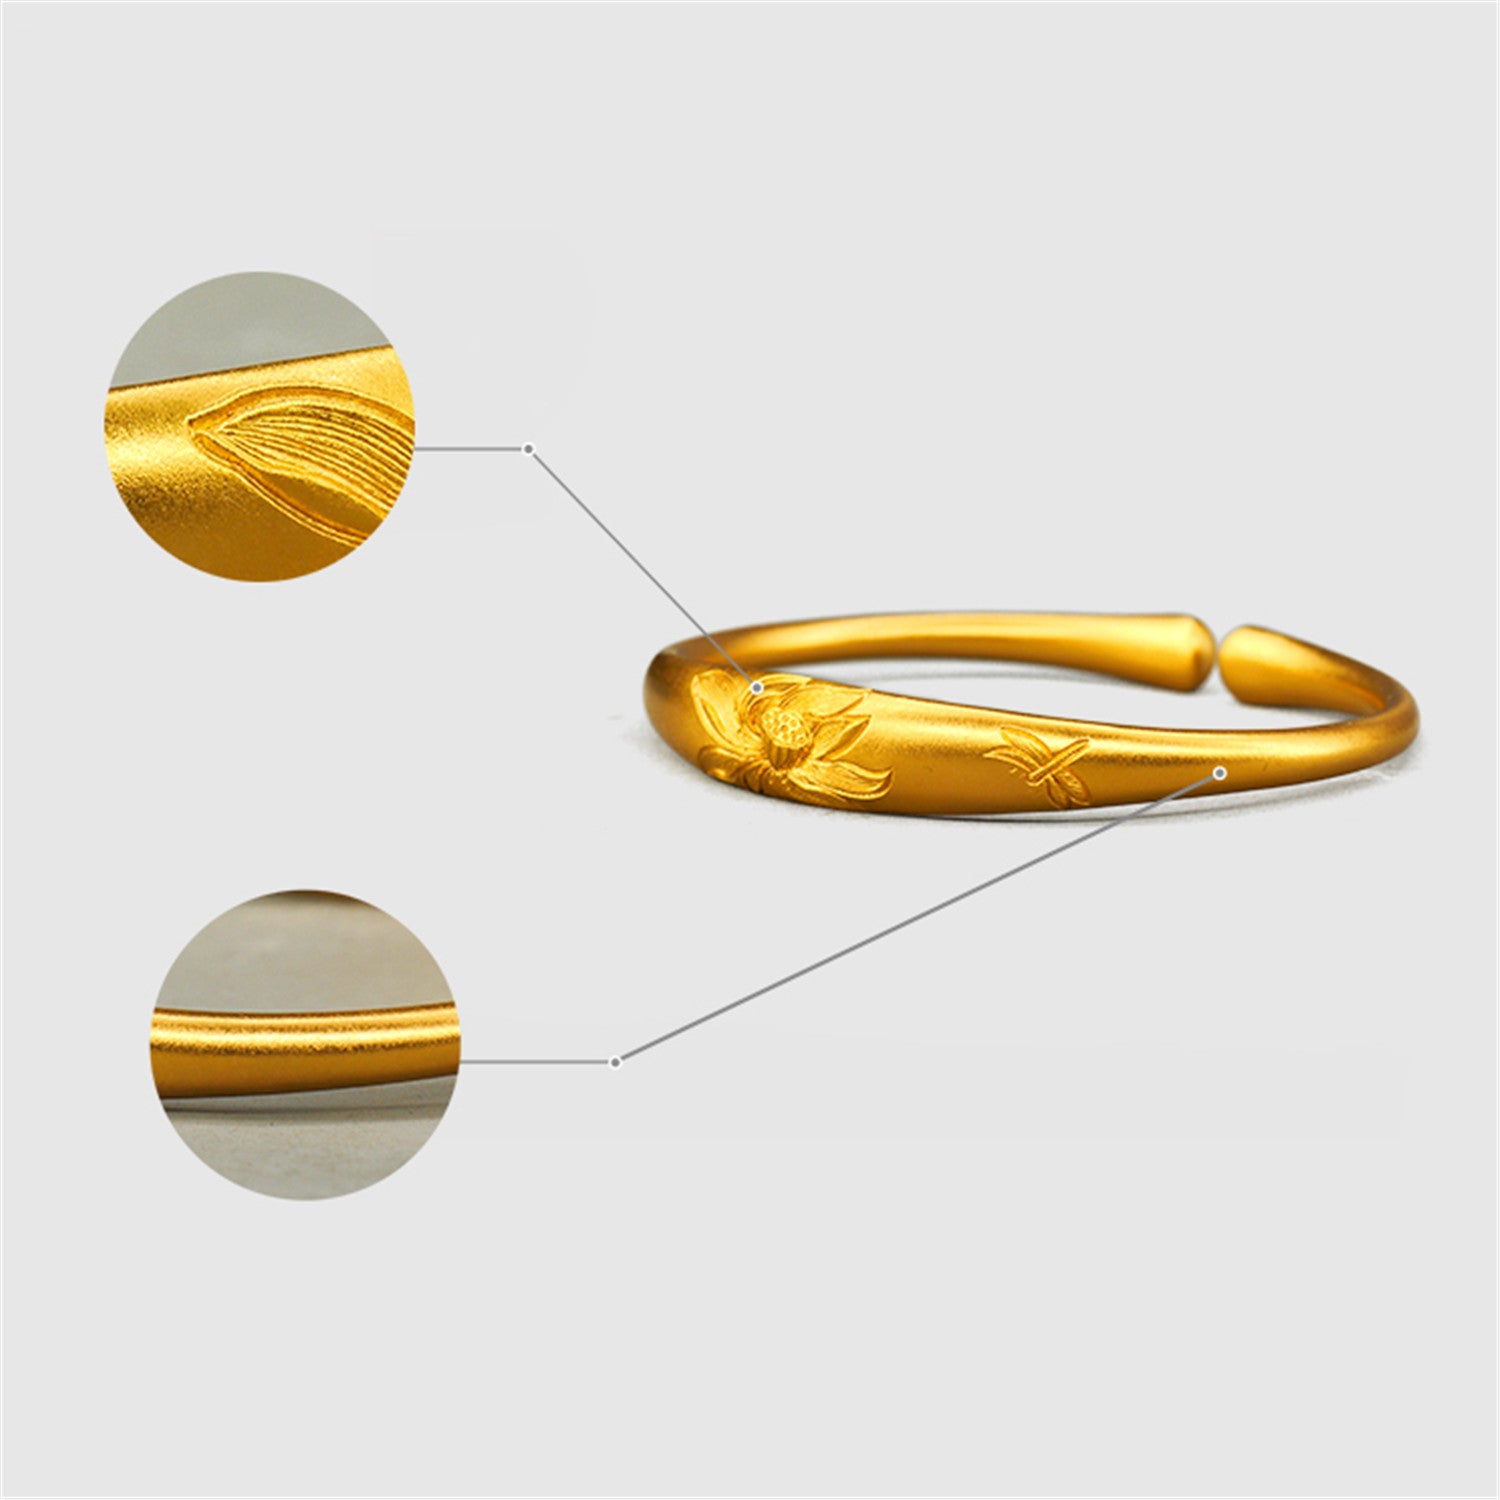 EVECOCO Full Gold Wedding Bracelet For Female,Lotus Pattern,Hand Forging,40g